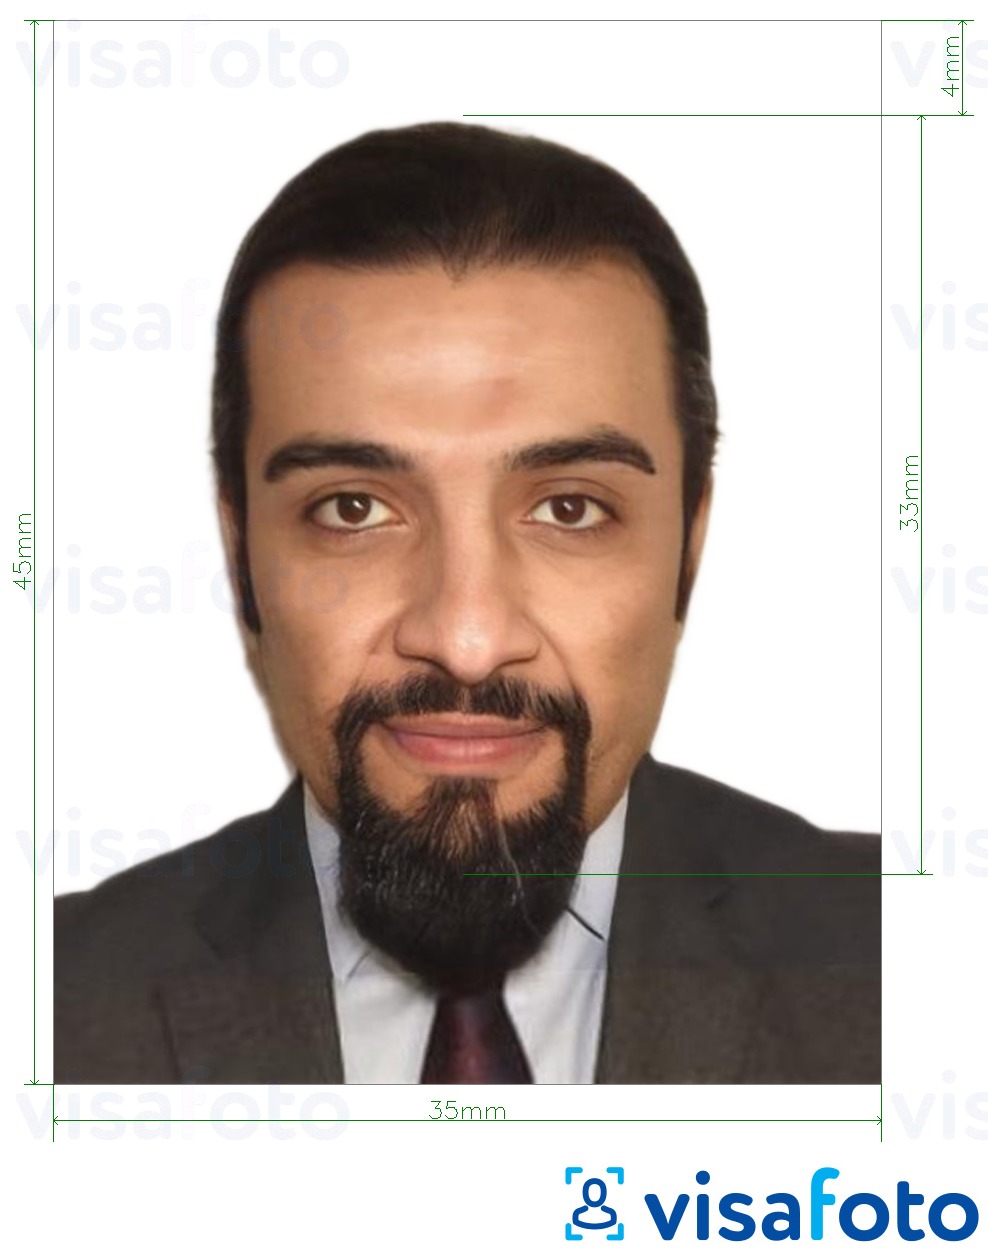 Exemple de foto per a Visa de Jordània 3,5x4,5 cm (35x45 mm) amb la mida exacta especificada